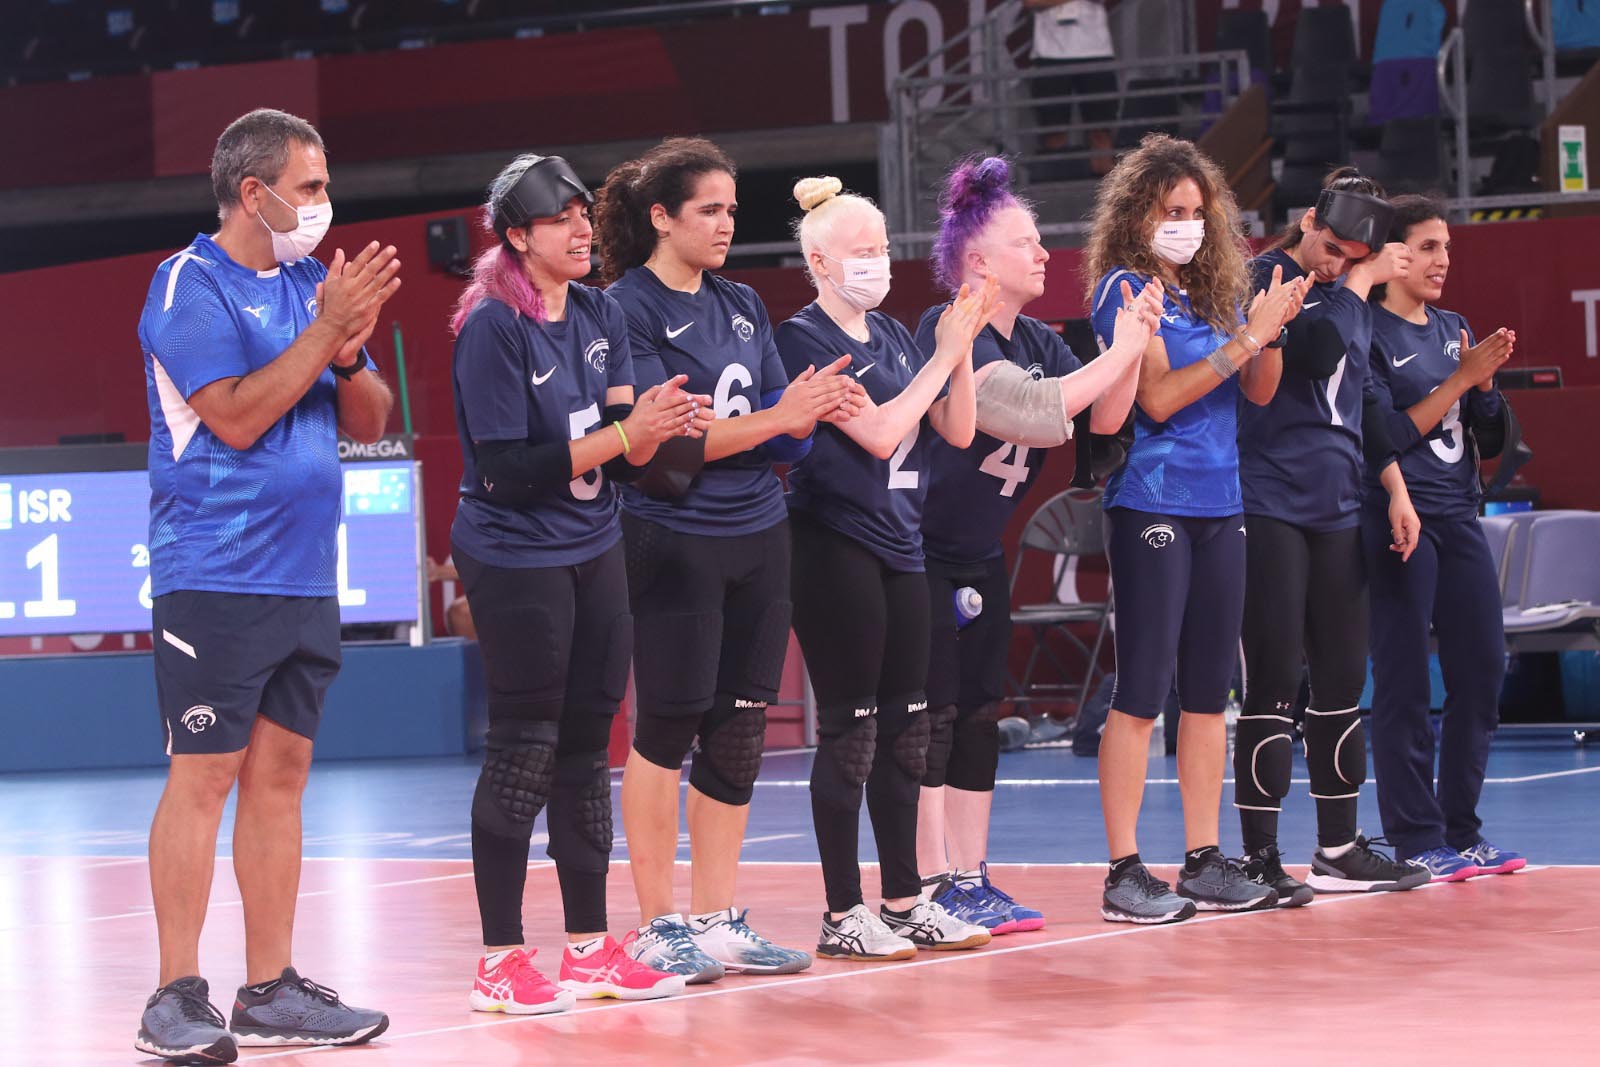 נבחרת הנשים של ישראל ישראל בכדורשער במשחקים הפראלימפיים בטוקיו (צילום: לילך וייס, הוועד הפראלימפי בישראל)